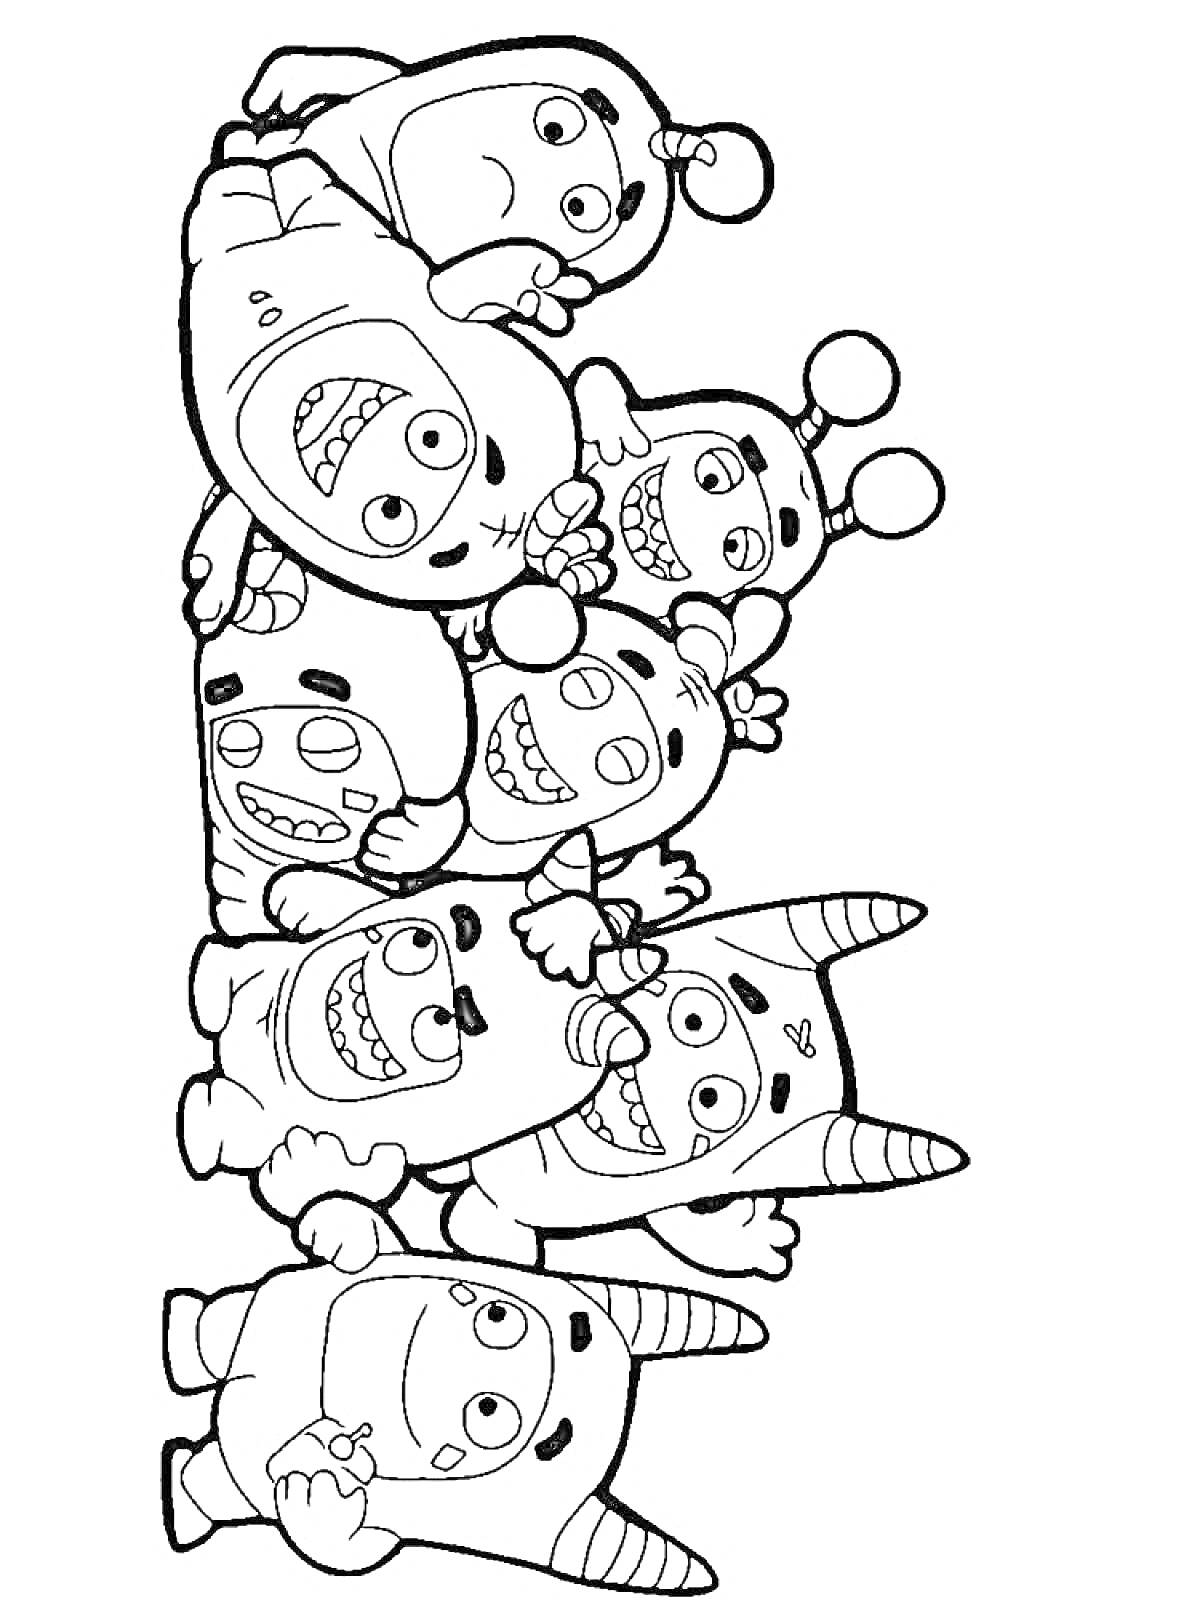 Раскраска Группа чудиков с антеннами и рожками, стоящих друг на друге